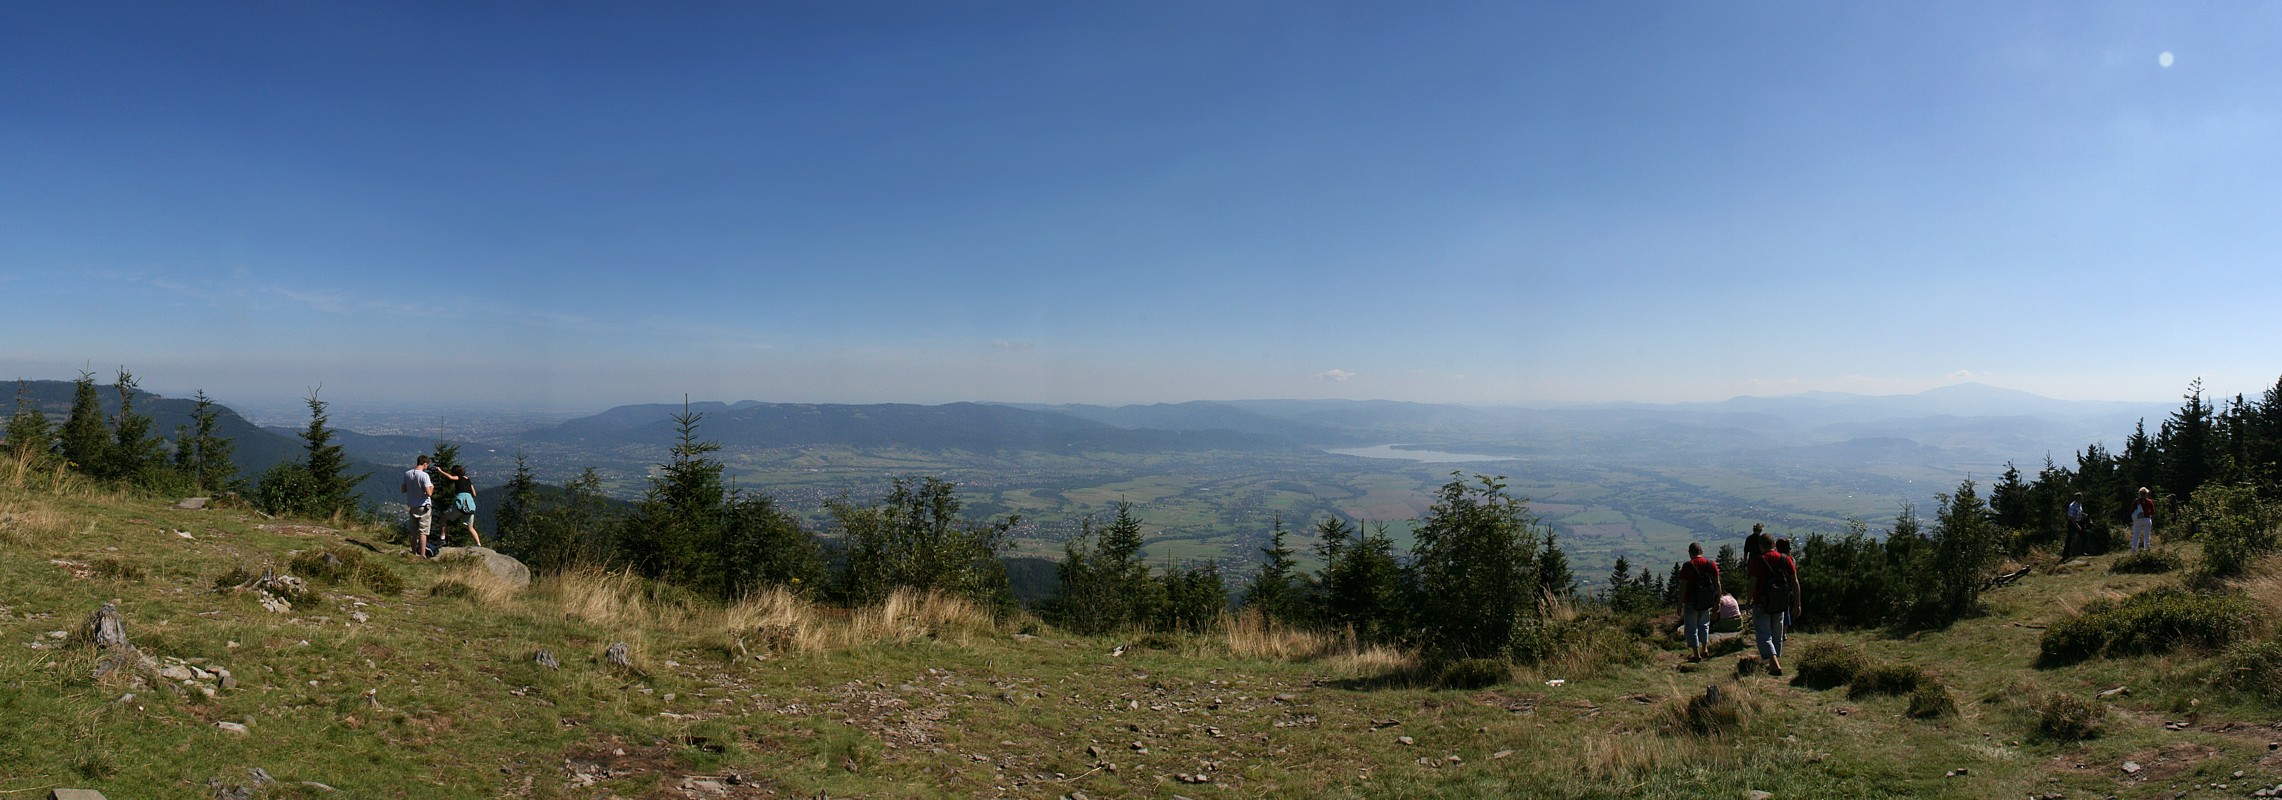 Skrzyczne (1257 m n.p.m.), widok na Jezioro Żywieckie
[i]Photo by G.W.[/i]
Słowa kluczowe: panorama,góry,lato